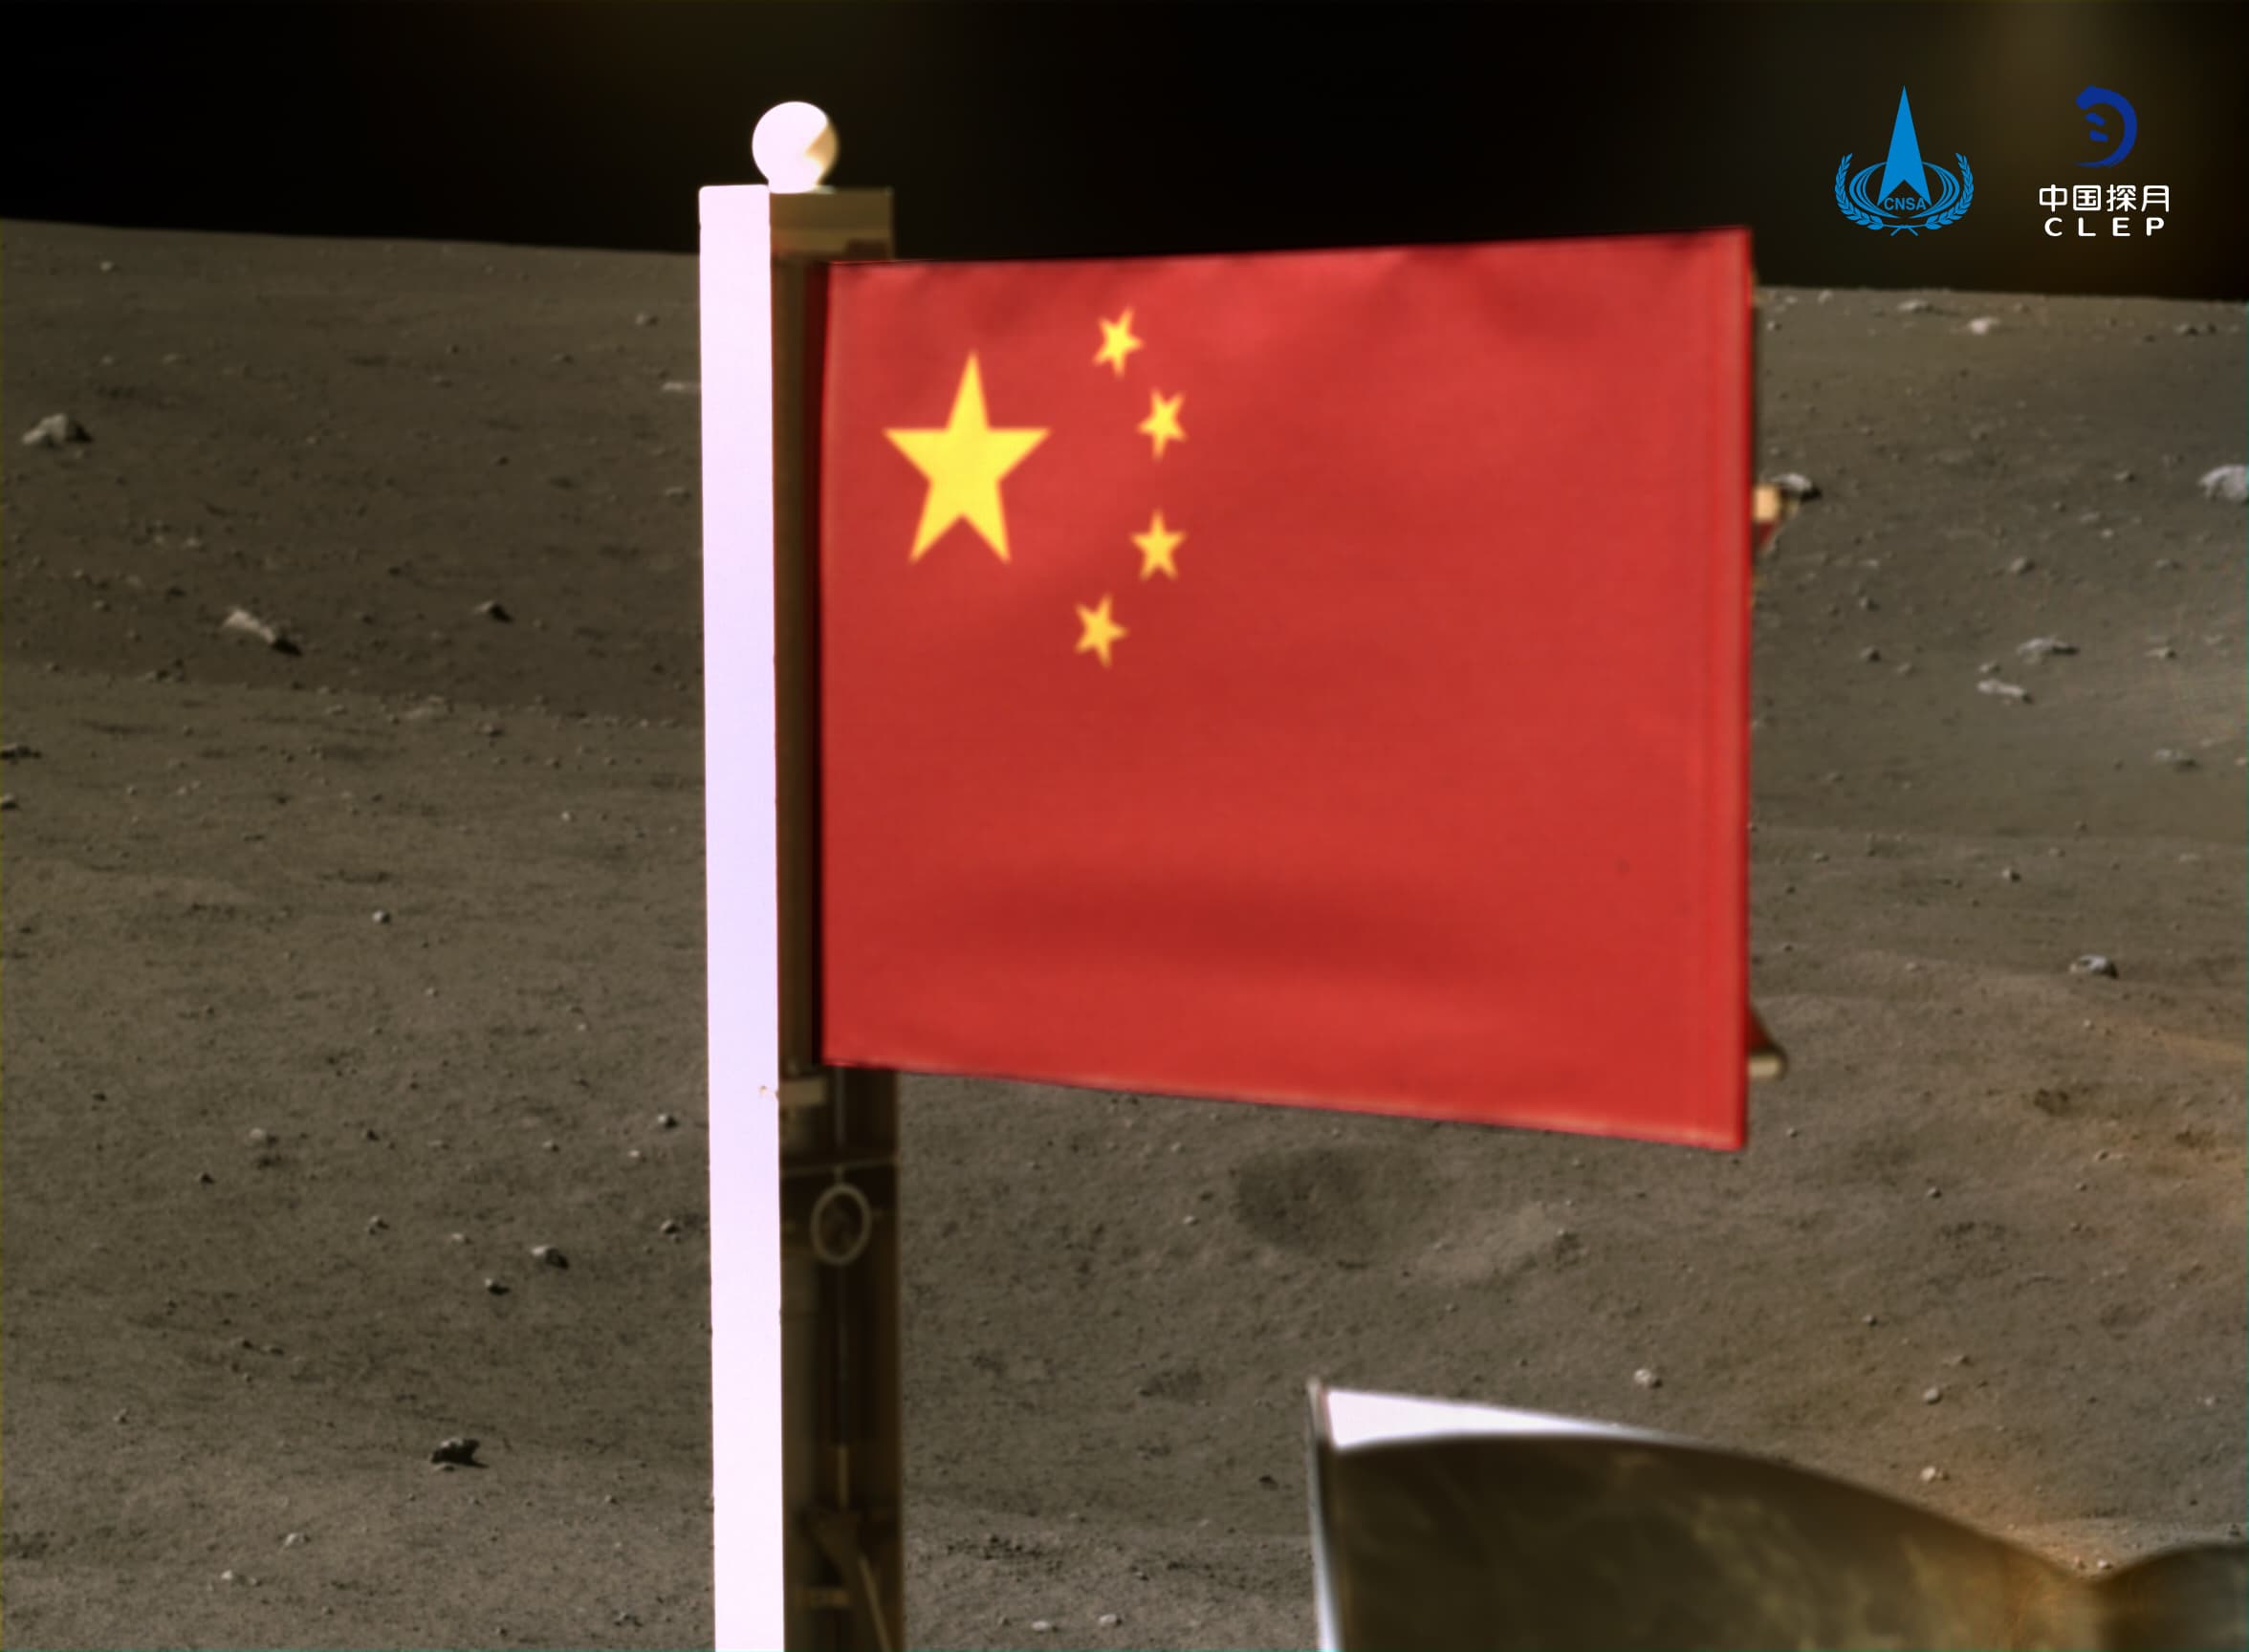 דגל סין מונף על הירח אתמול. קרדיט: CNSA